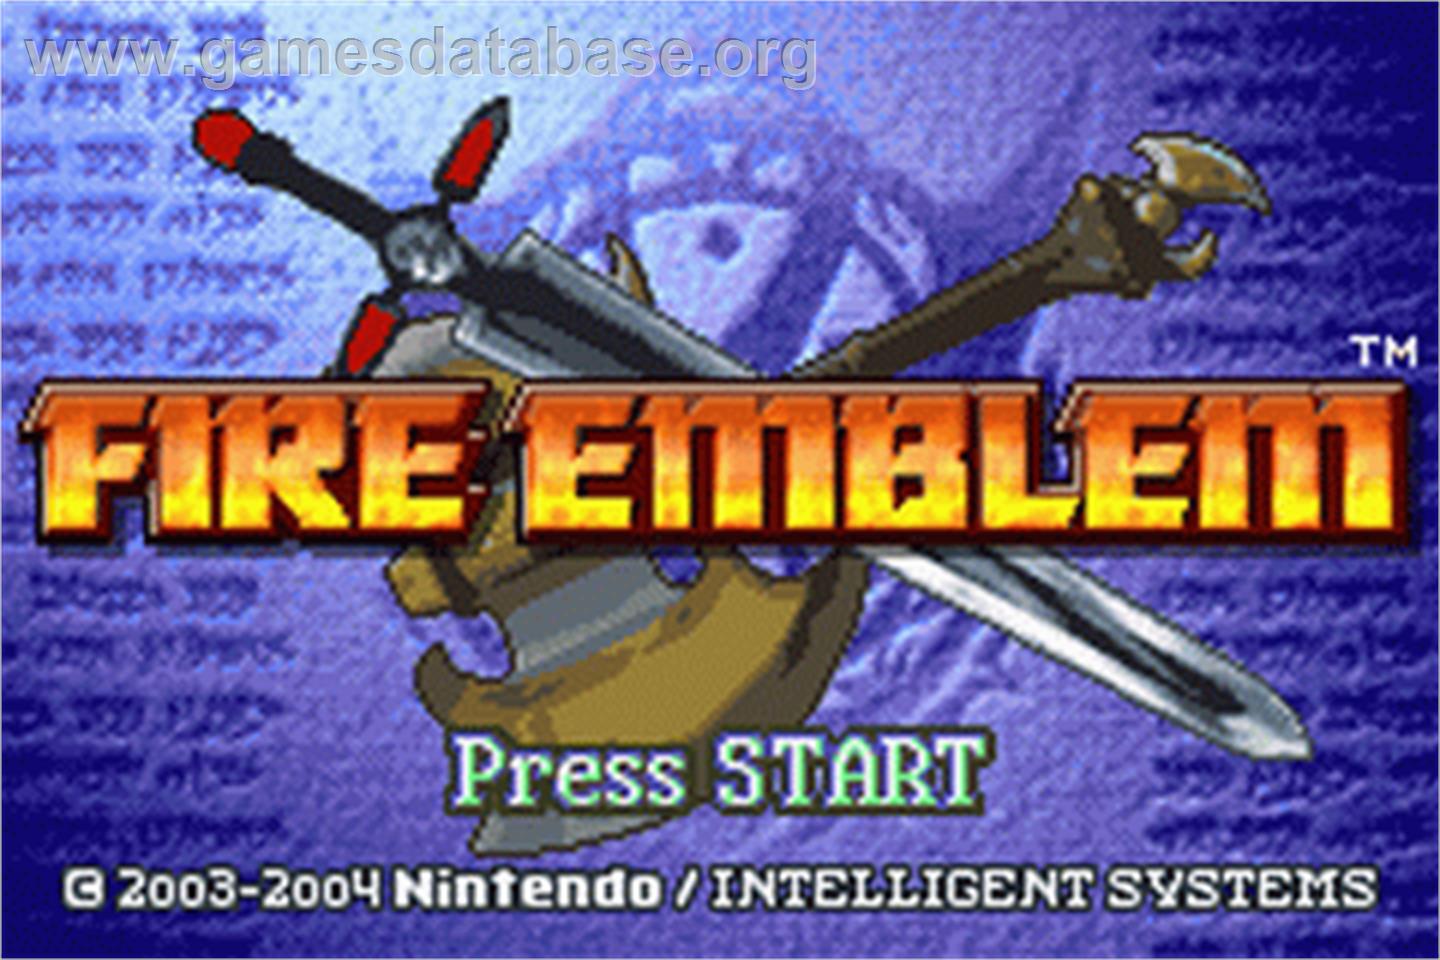 Fire Emblem - Nintendo Game Boy Advance - Artwork - Title Screen